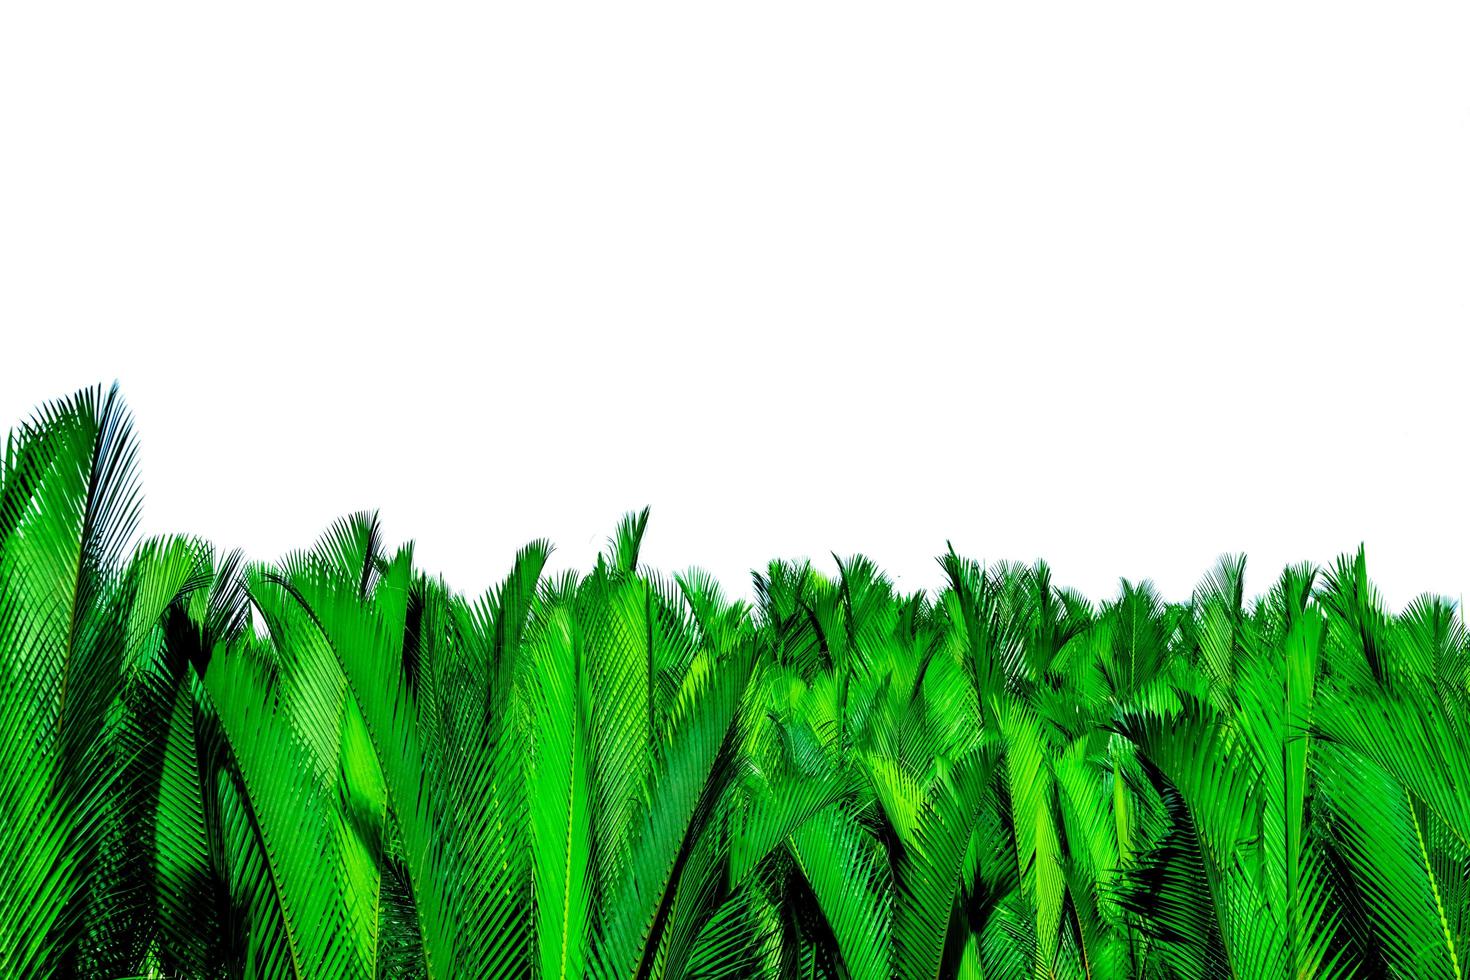 feuilles vertes de palmier isolés sur fond blanc. nypa fruticans wurmb nypa, palmier atap, palmier nipa, palmier de mangrove. feuille verte pour la décoration dans les produits biologiques. plante tropicale. feuille exotique verte. photo